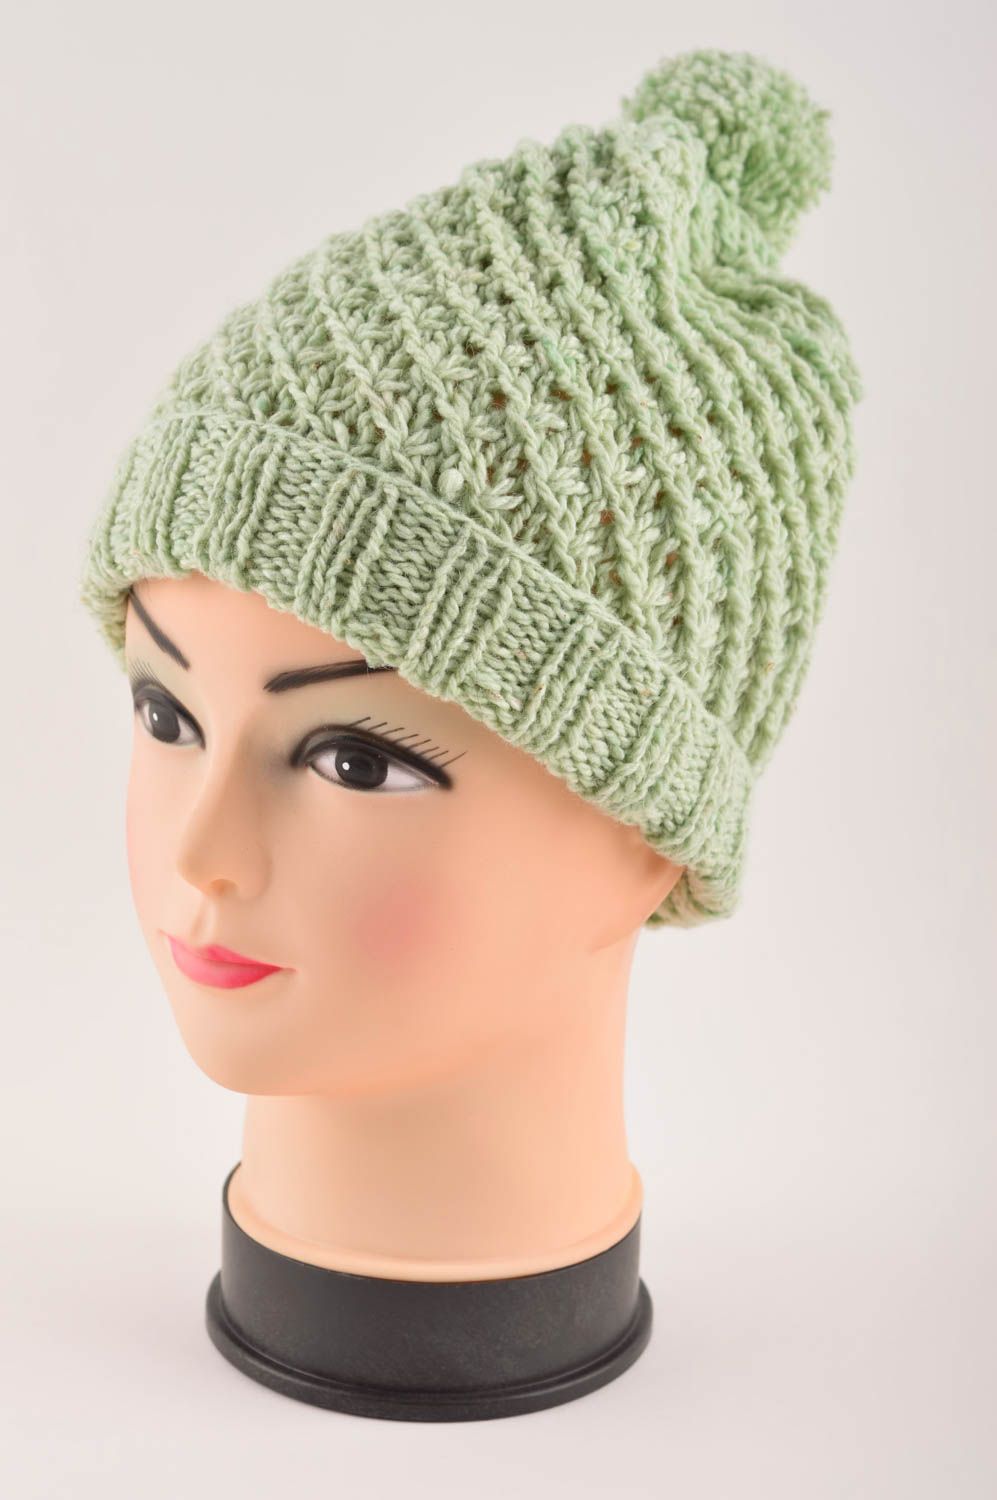 Helle gehäkelte Kindermütze handgemachte Mütze Kopf Accessoires schön grün foto 2